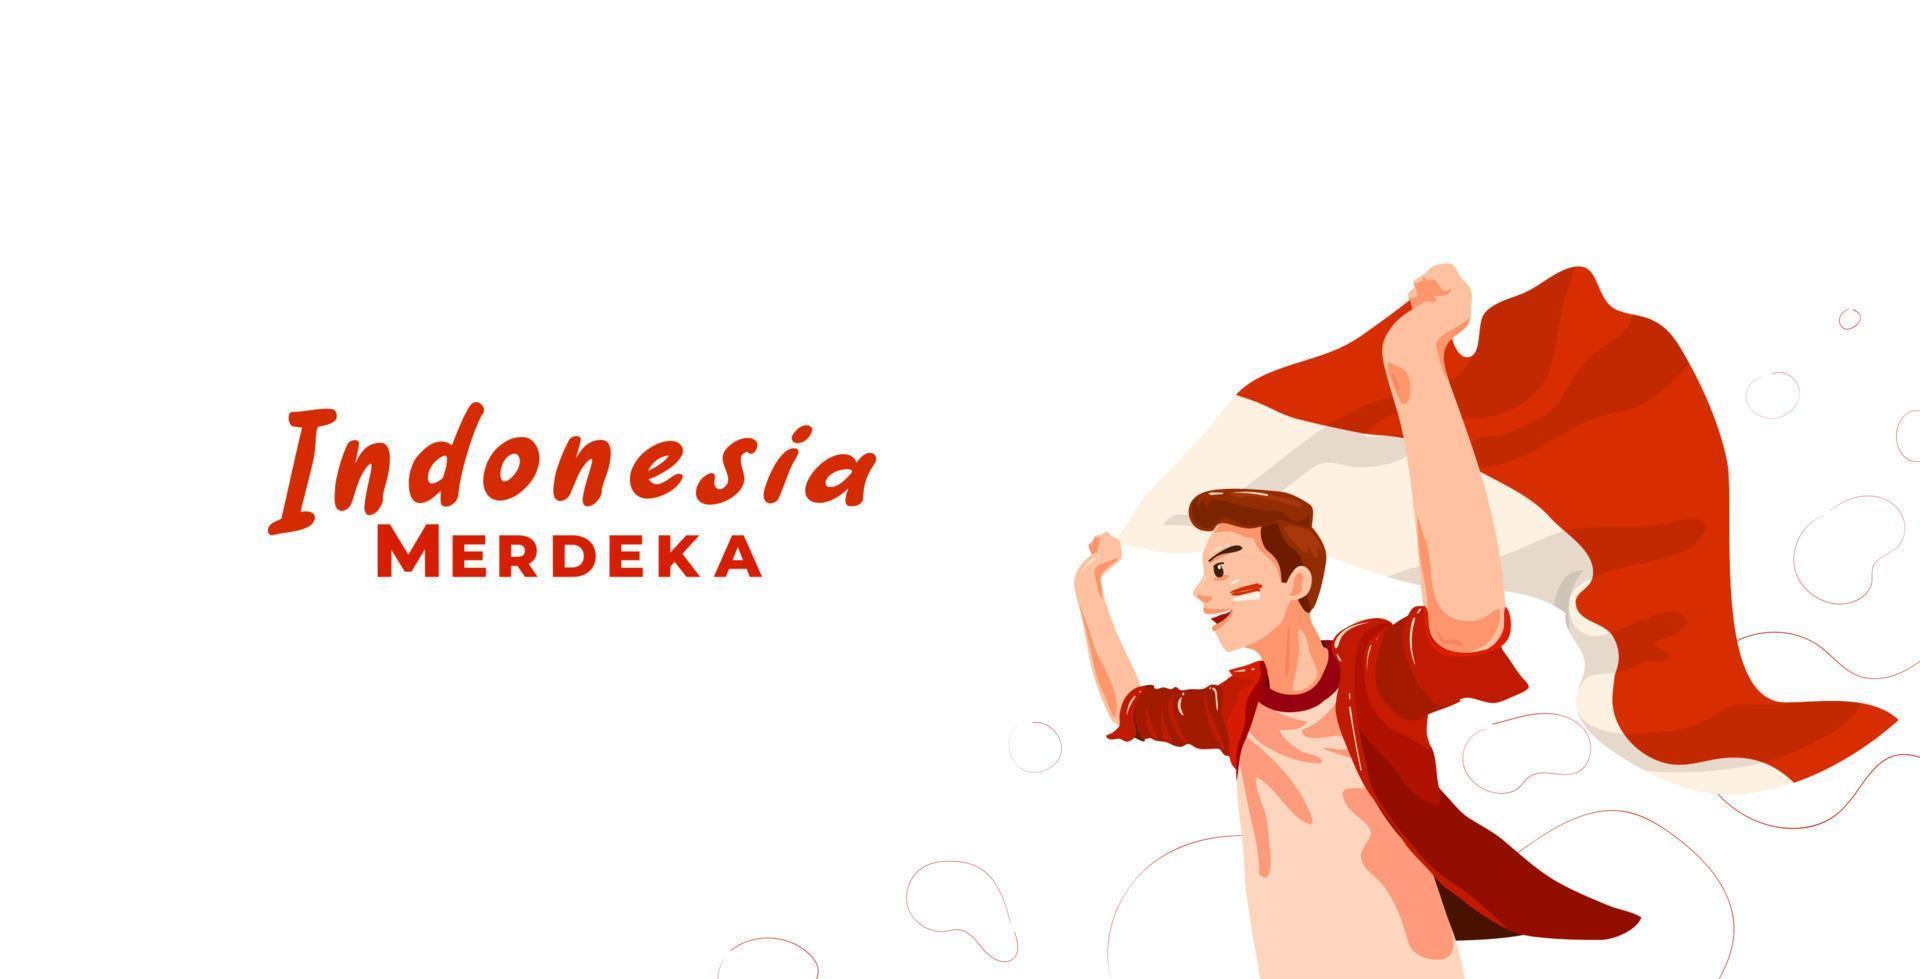 jonge indonesische vieren indonesië onafhankelijkheidsdag met wapperende vlag. merdeka vertaalt naar onafhankelijkheid of vrijheid of onafhankelijk vector